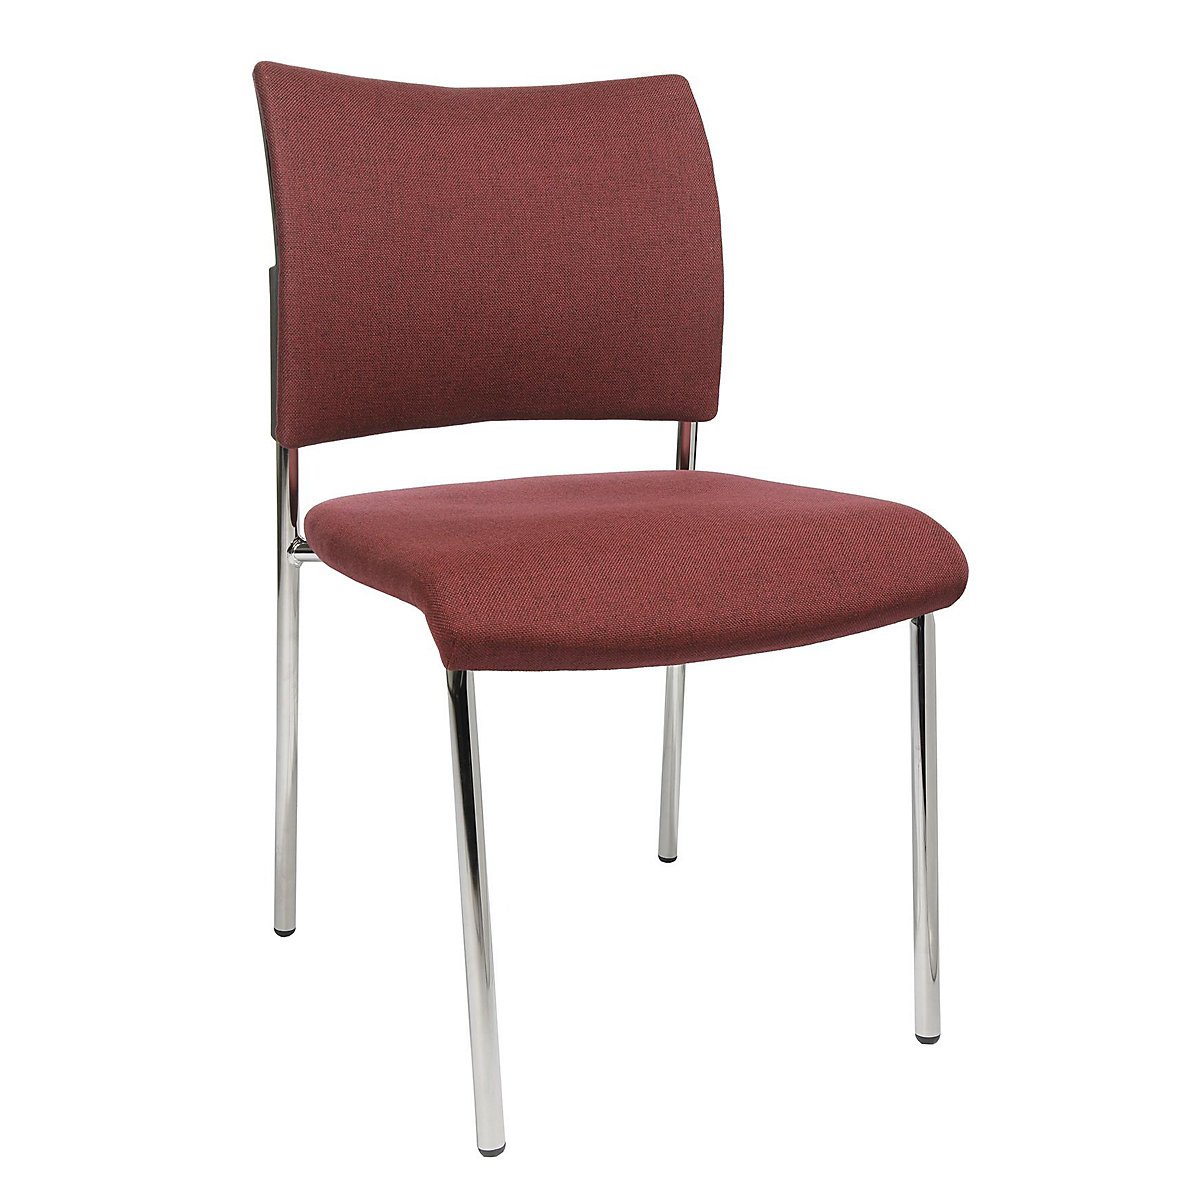 Bezoekersstoel, stapelbaar – Topstar, met 4 poten, rugleuning met textielbekleding, VE = 2 stuks, bordeaux-8